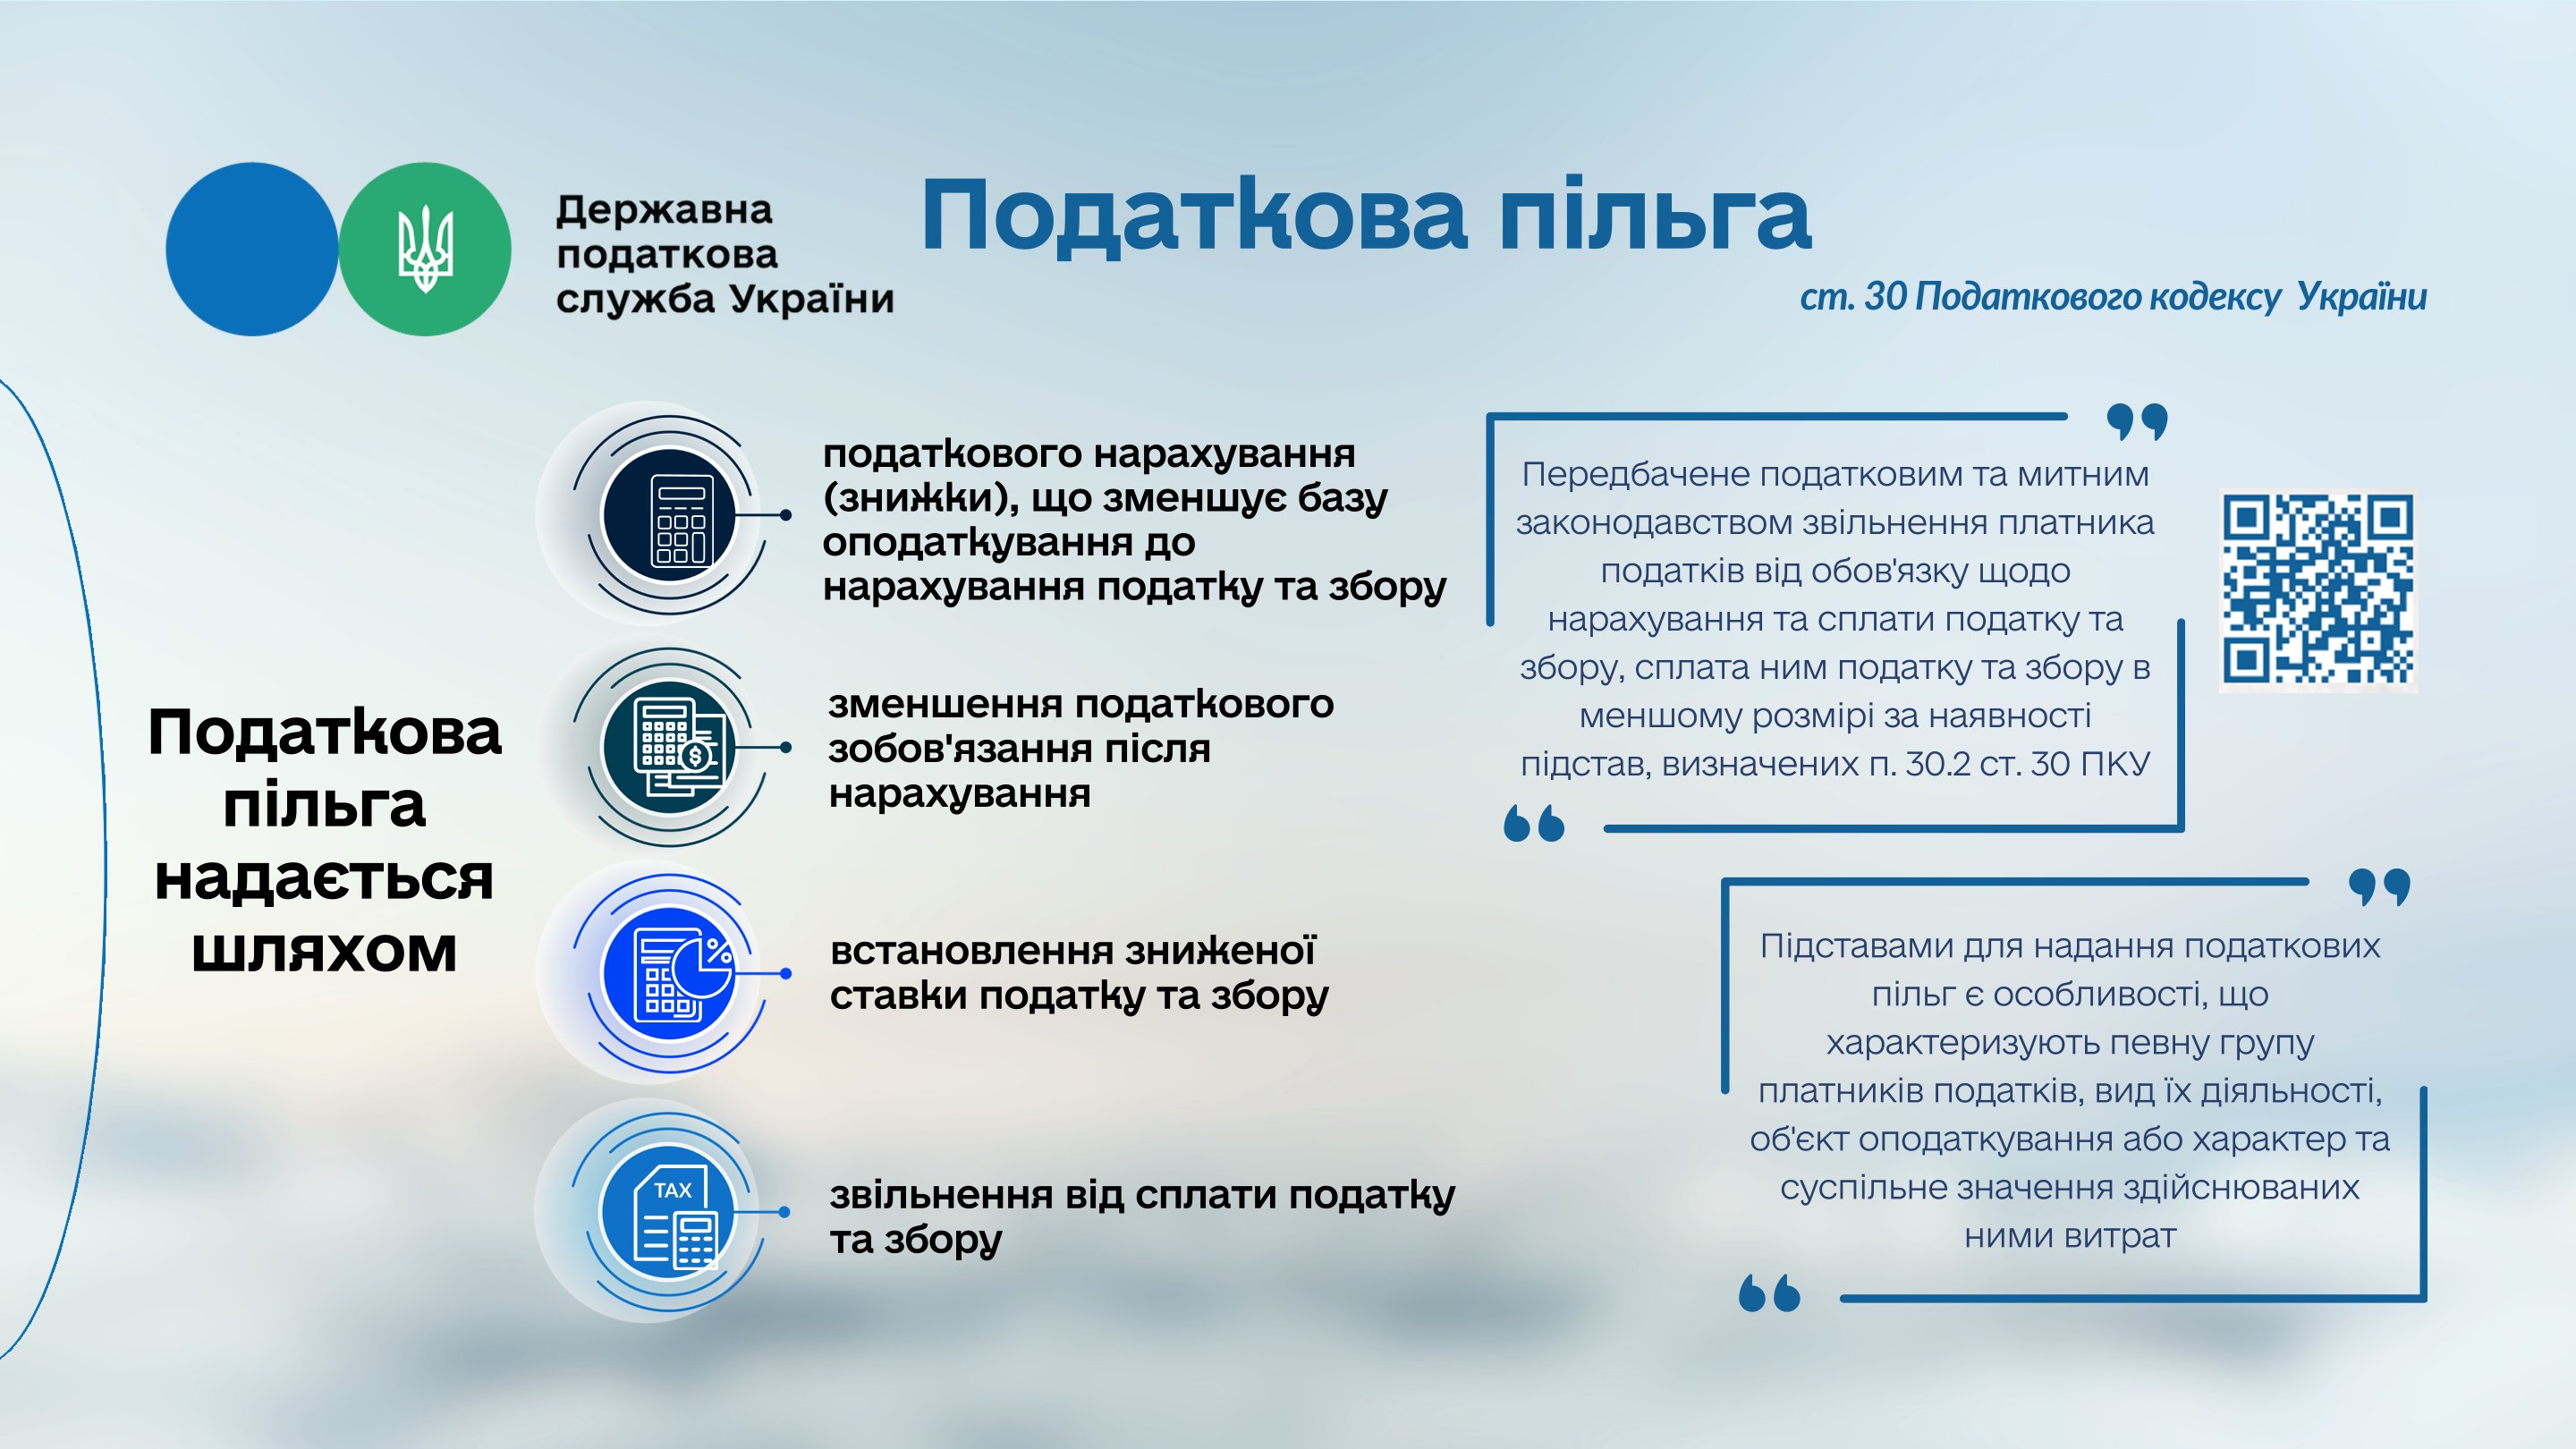 Які податкові пільги та їх види встановлені чинним законодавством України?